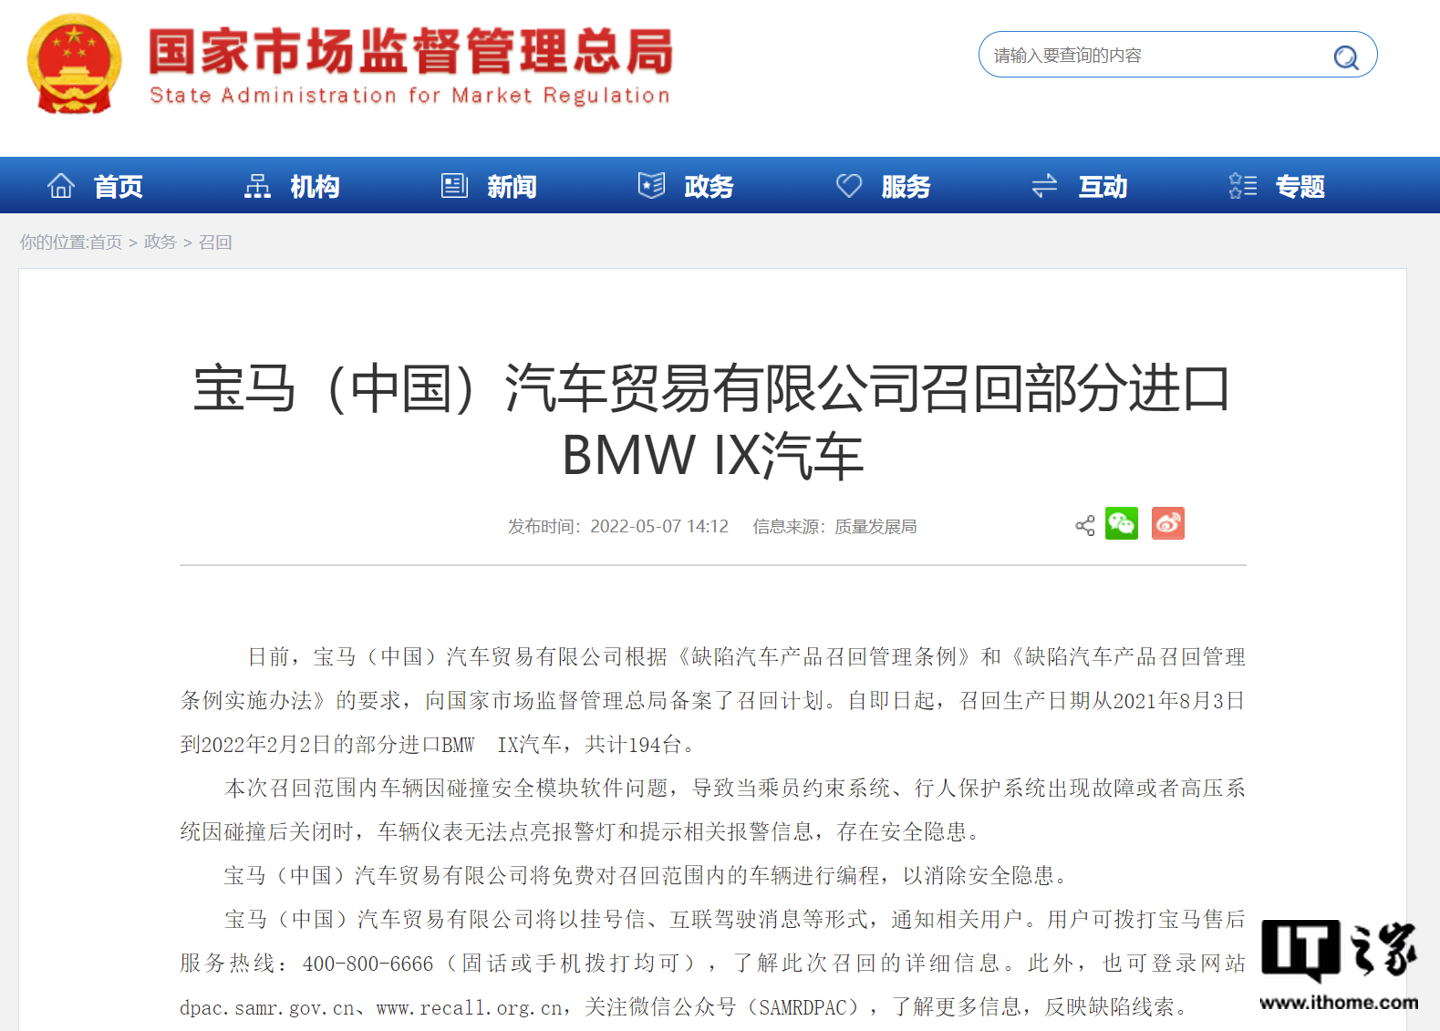 宝马中国召回部分进口 BMW IX 旗舰电动 SUV